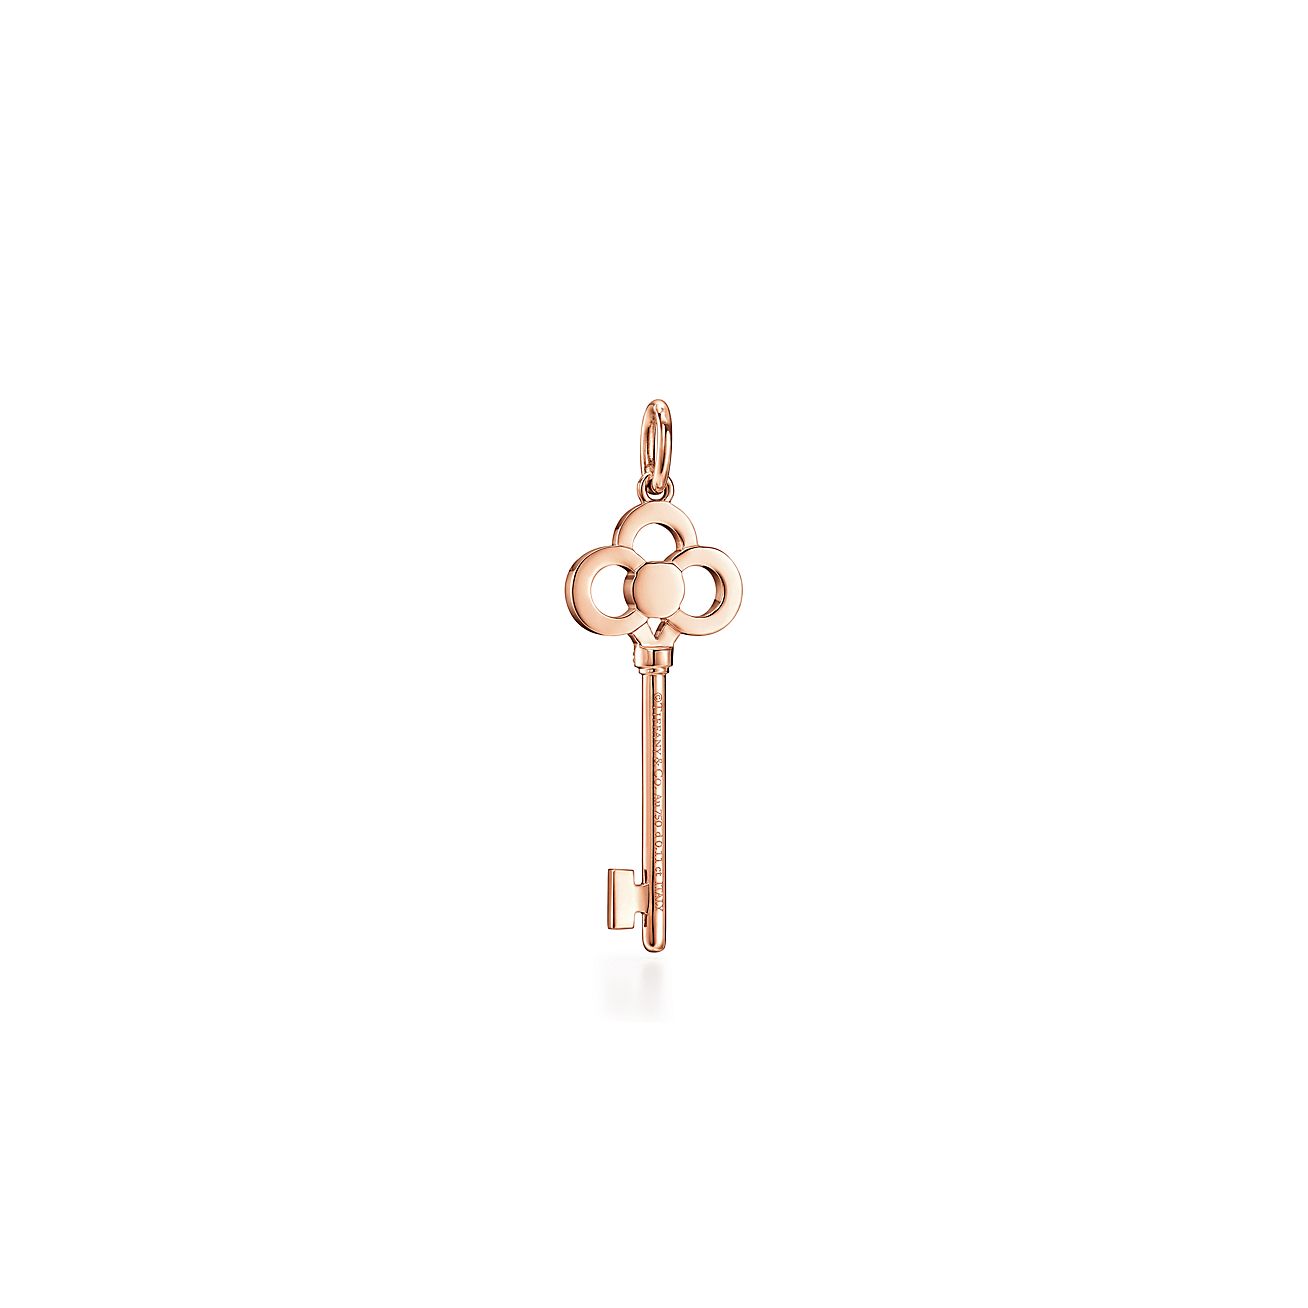 tiffany crown key